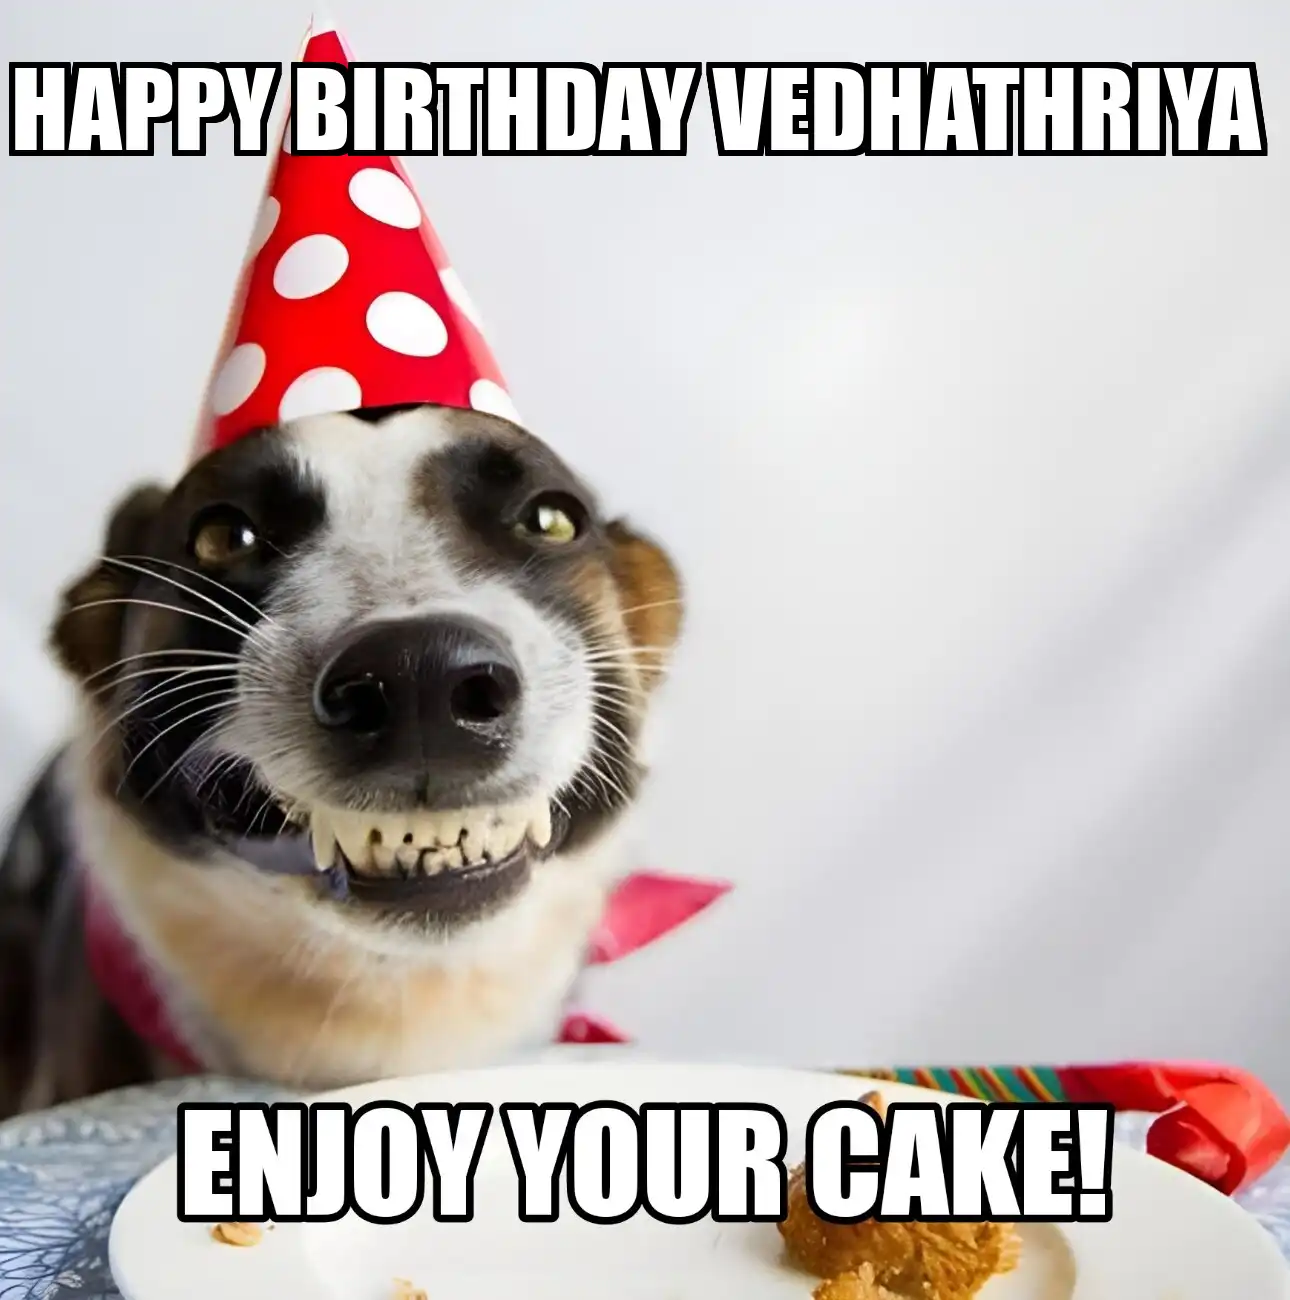 Happy Birthday Vedhathriya Enjoy Your Cake Dog Meme